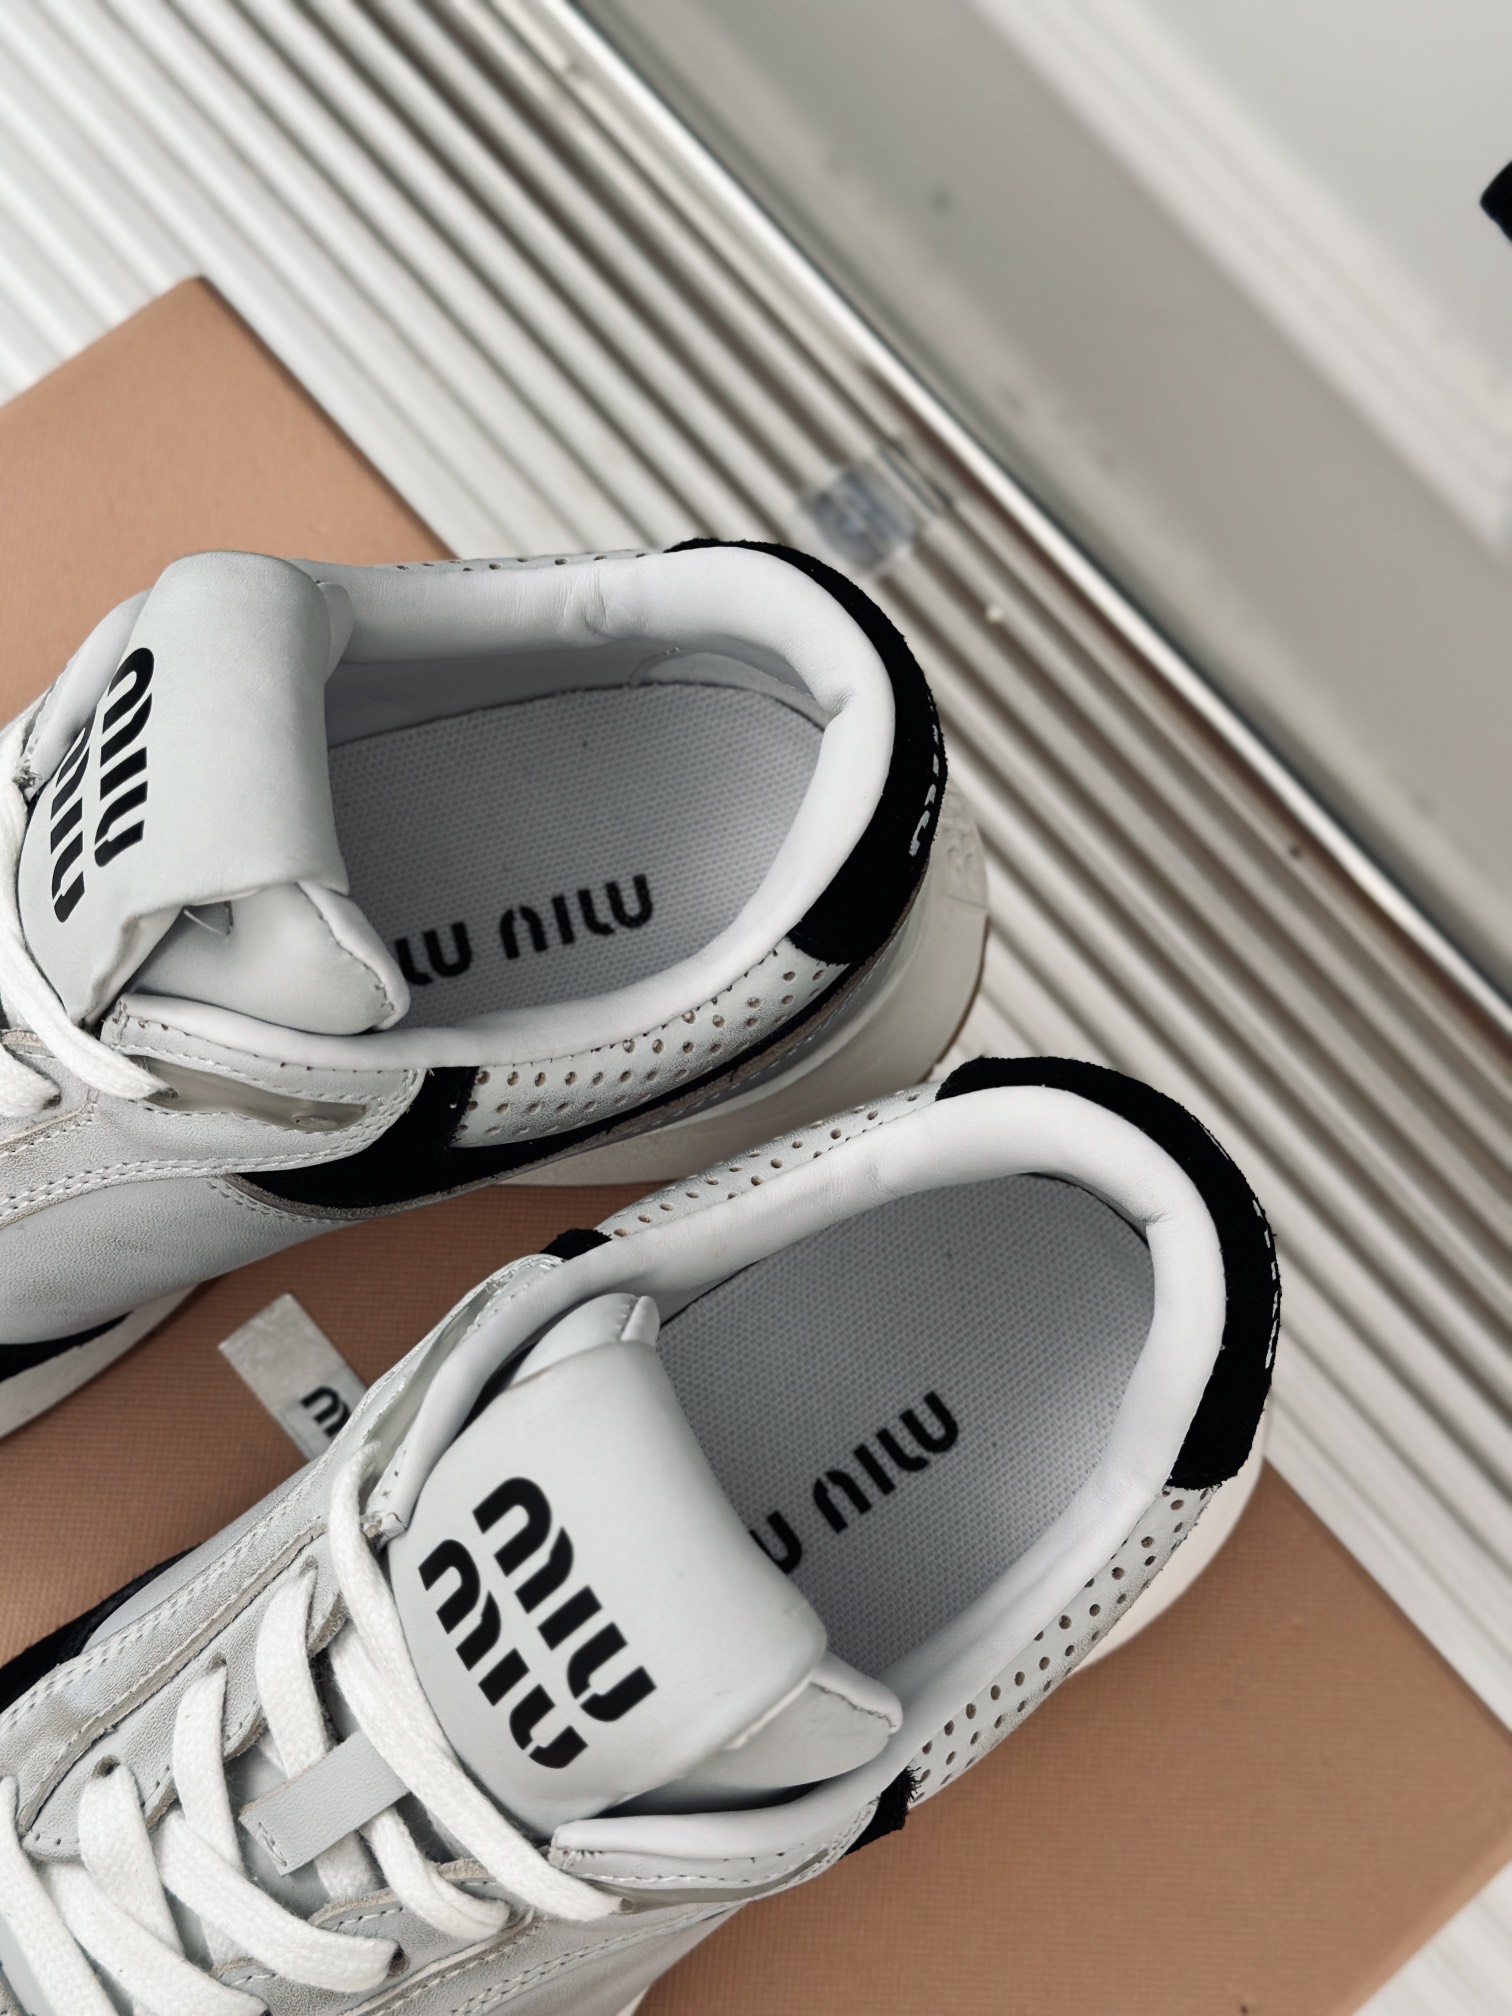 MiuMiu/缪缪24s早春新品复古休闲运动鞋️️简约的运动板鞋设计极具辨识度的鞋舌打造佛系甜美的休闲风